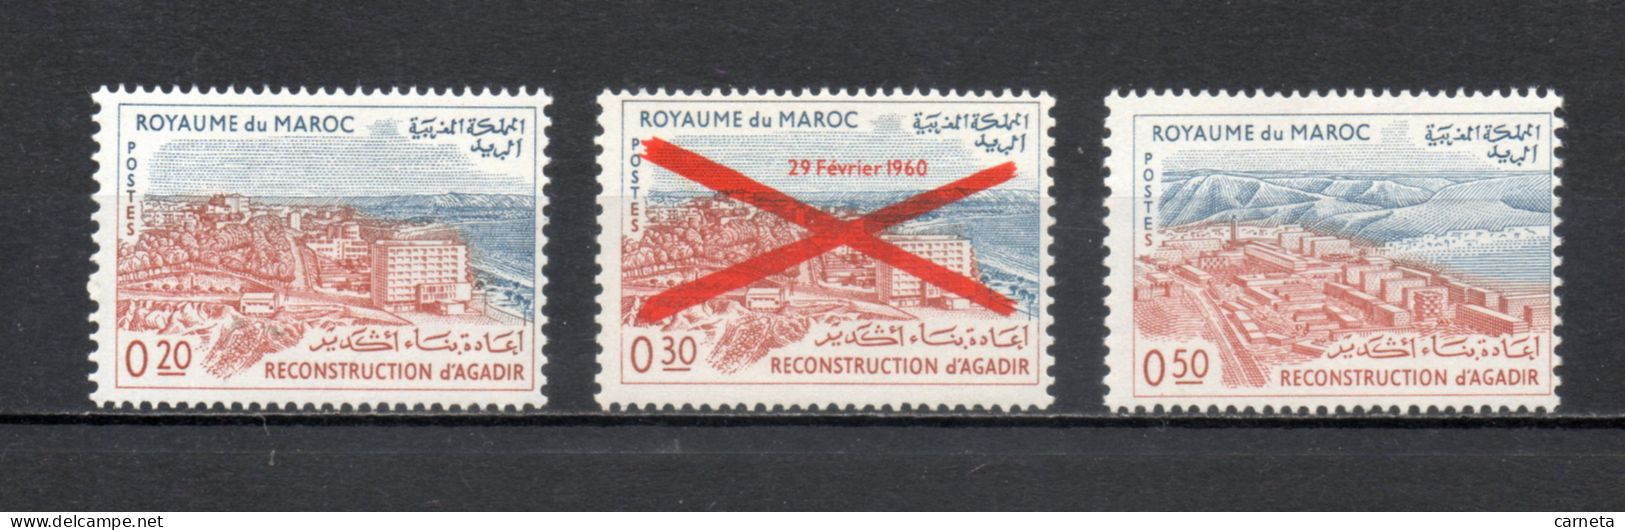 MAROC N°  464 à 466    NEUFS SANS CHARNIERE  COTE 3.50€   RECONSTRUCTION VILLE - Morocco (1956-...)